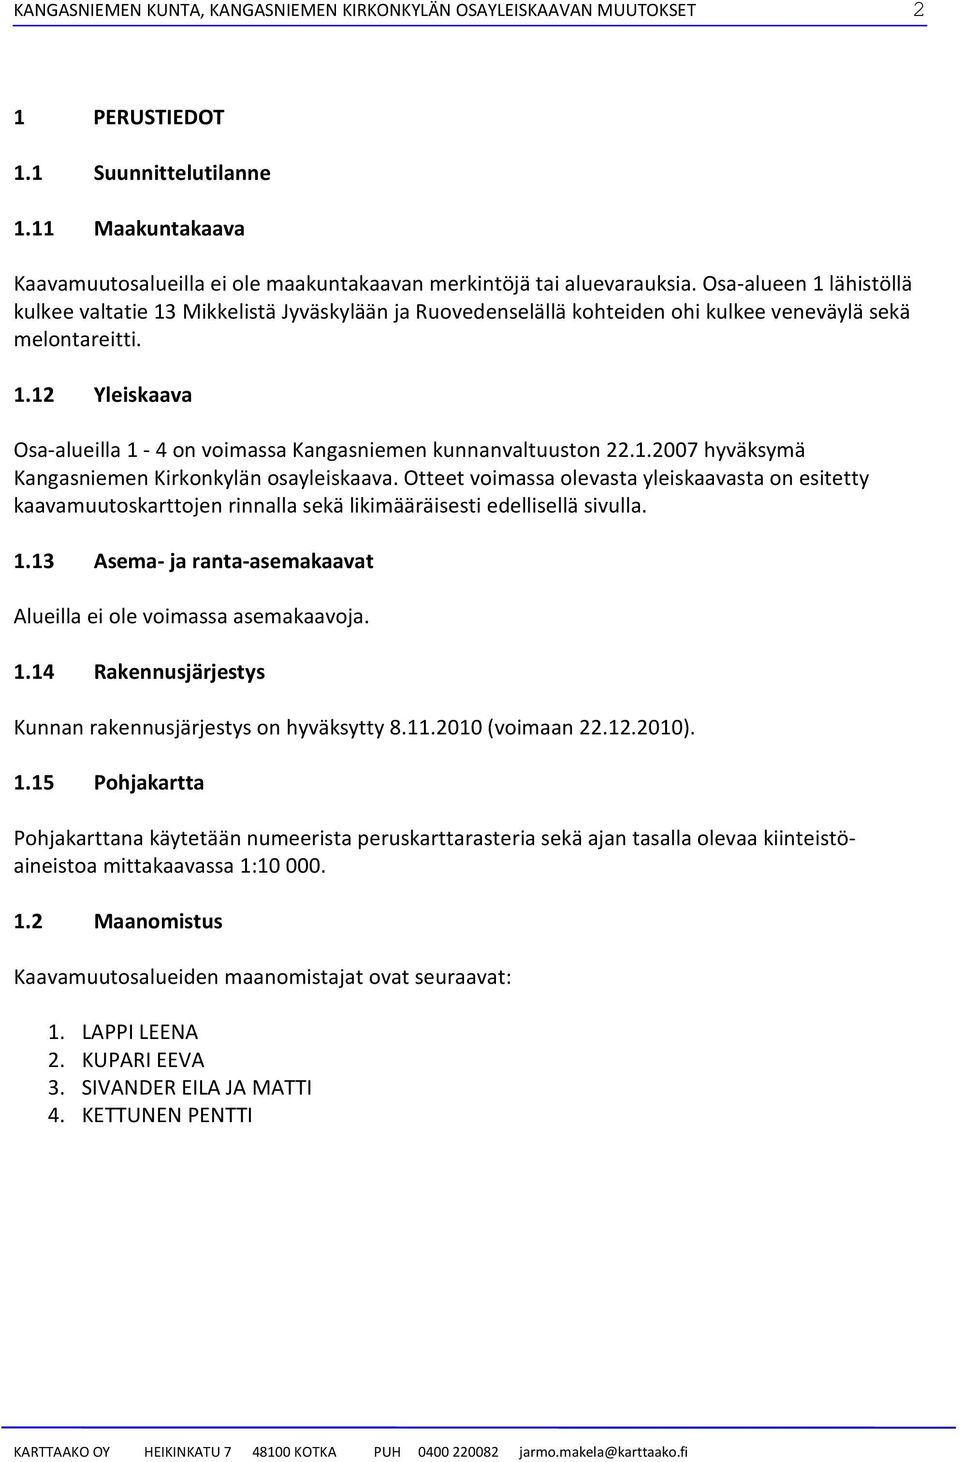 1.2007 hyväksymä Kangasniemen Kirkonkylän osayleiskaava. Otteet voimassa olevasta yleiskaavasta on esitetty kaavamuutoskarttojen rinnalla sekä likimääräisesti edellisellä sivulla. 1.